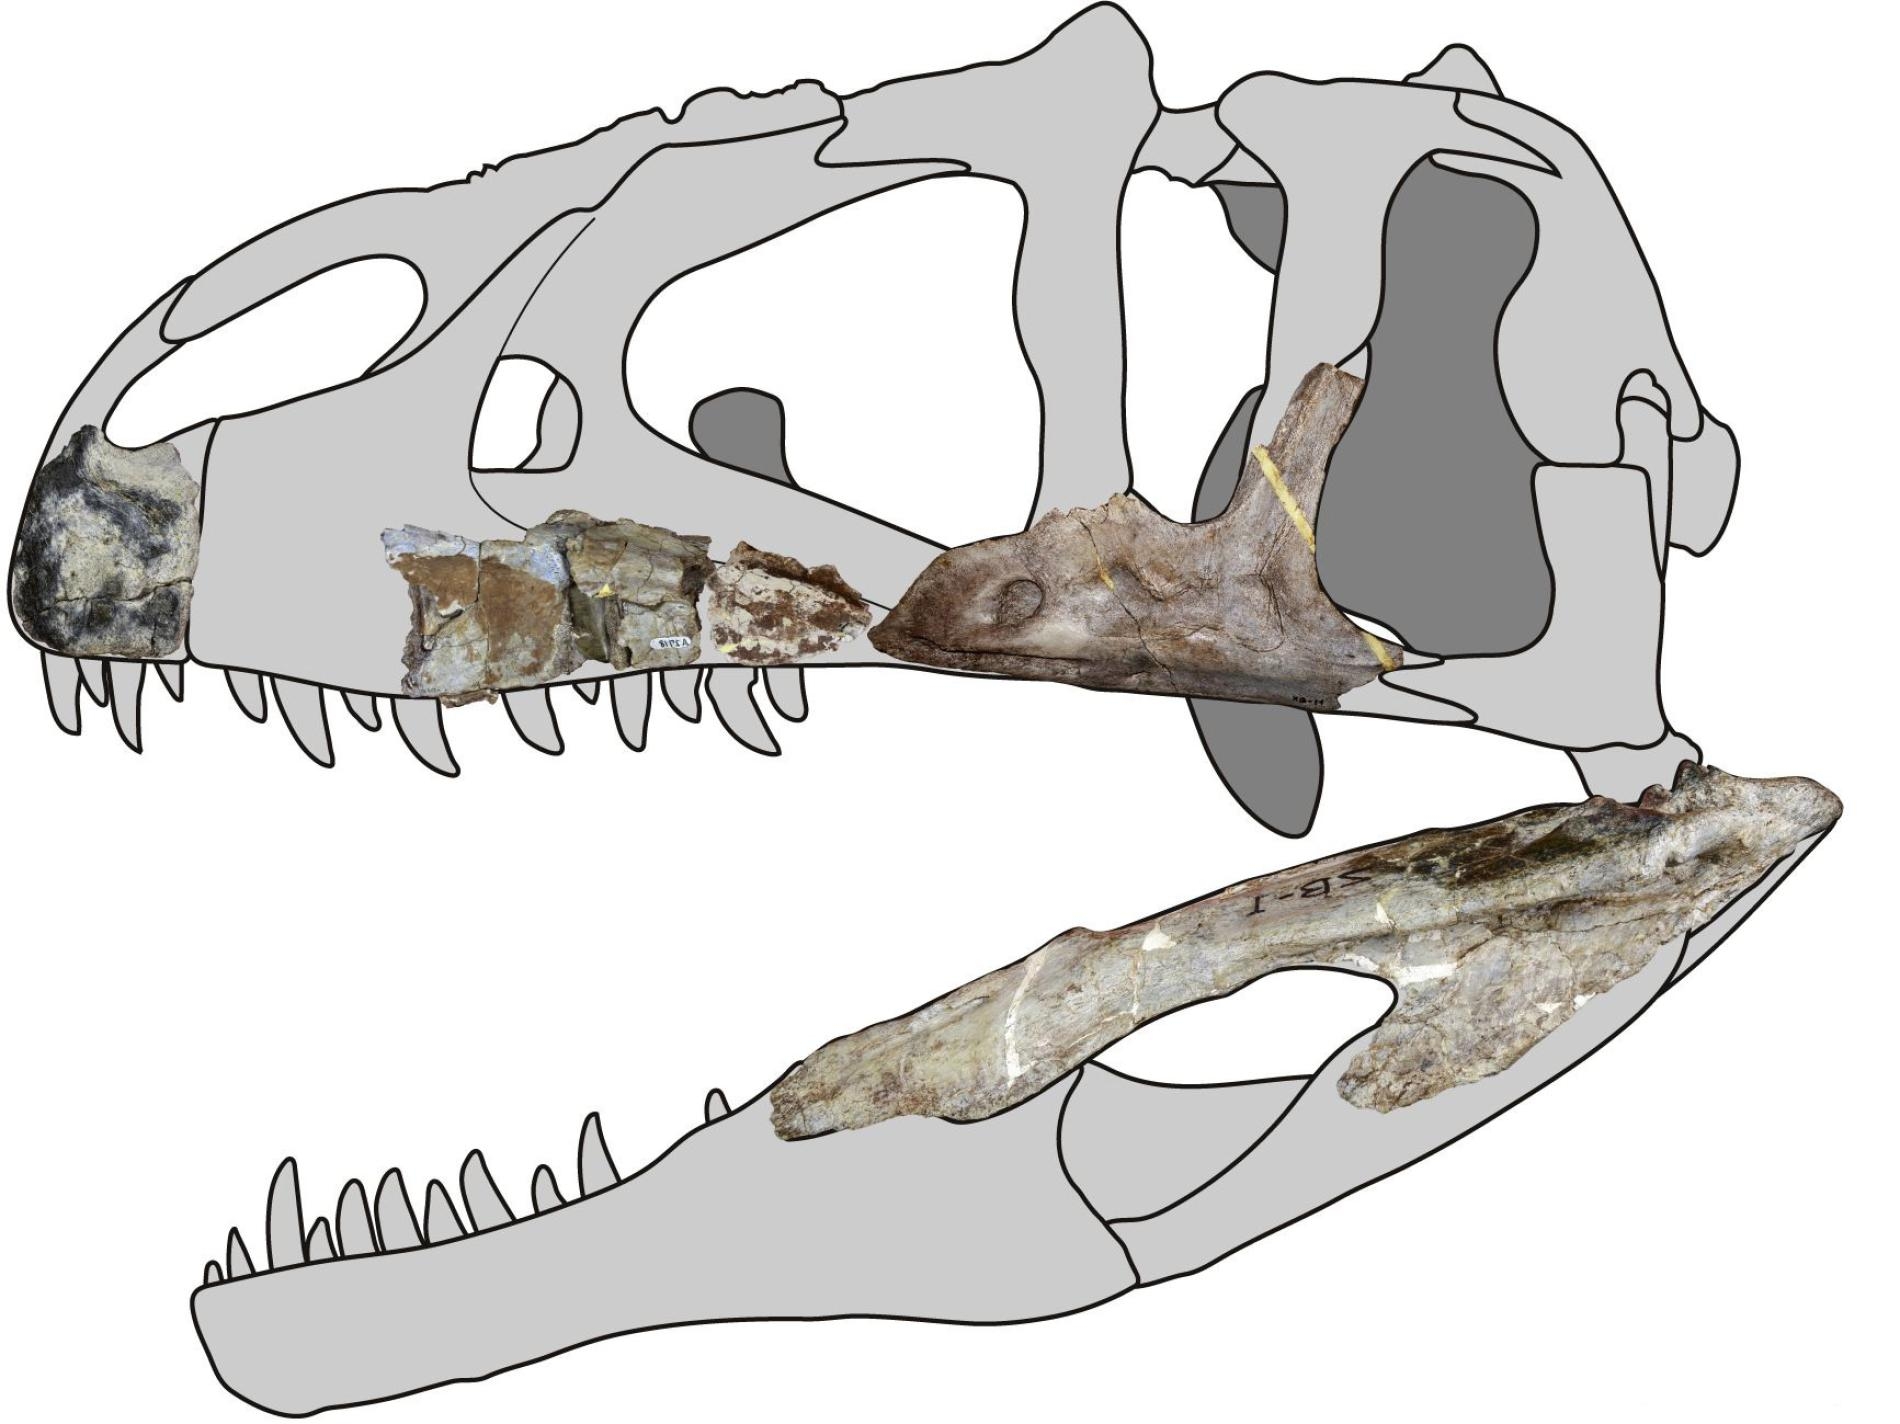 在泰國進行的化石發掘找出了蘇瓦提暹羅盜龍（<i>Siamraptor suwati</i>），是一種新型的掠食性恐龍。這種生物屬於鯊齒龍屬，牠們以神似牛排刀的鋸齒狀牙齒聞名。IMAGE COURTESY OF CHOKCHALOEMWONG ET AL., 2019